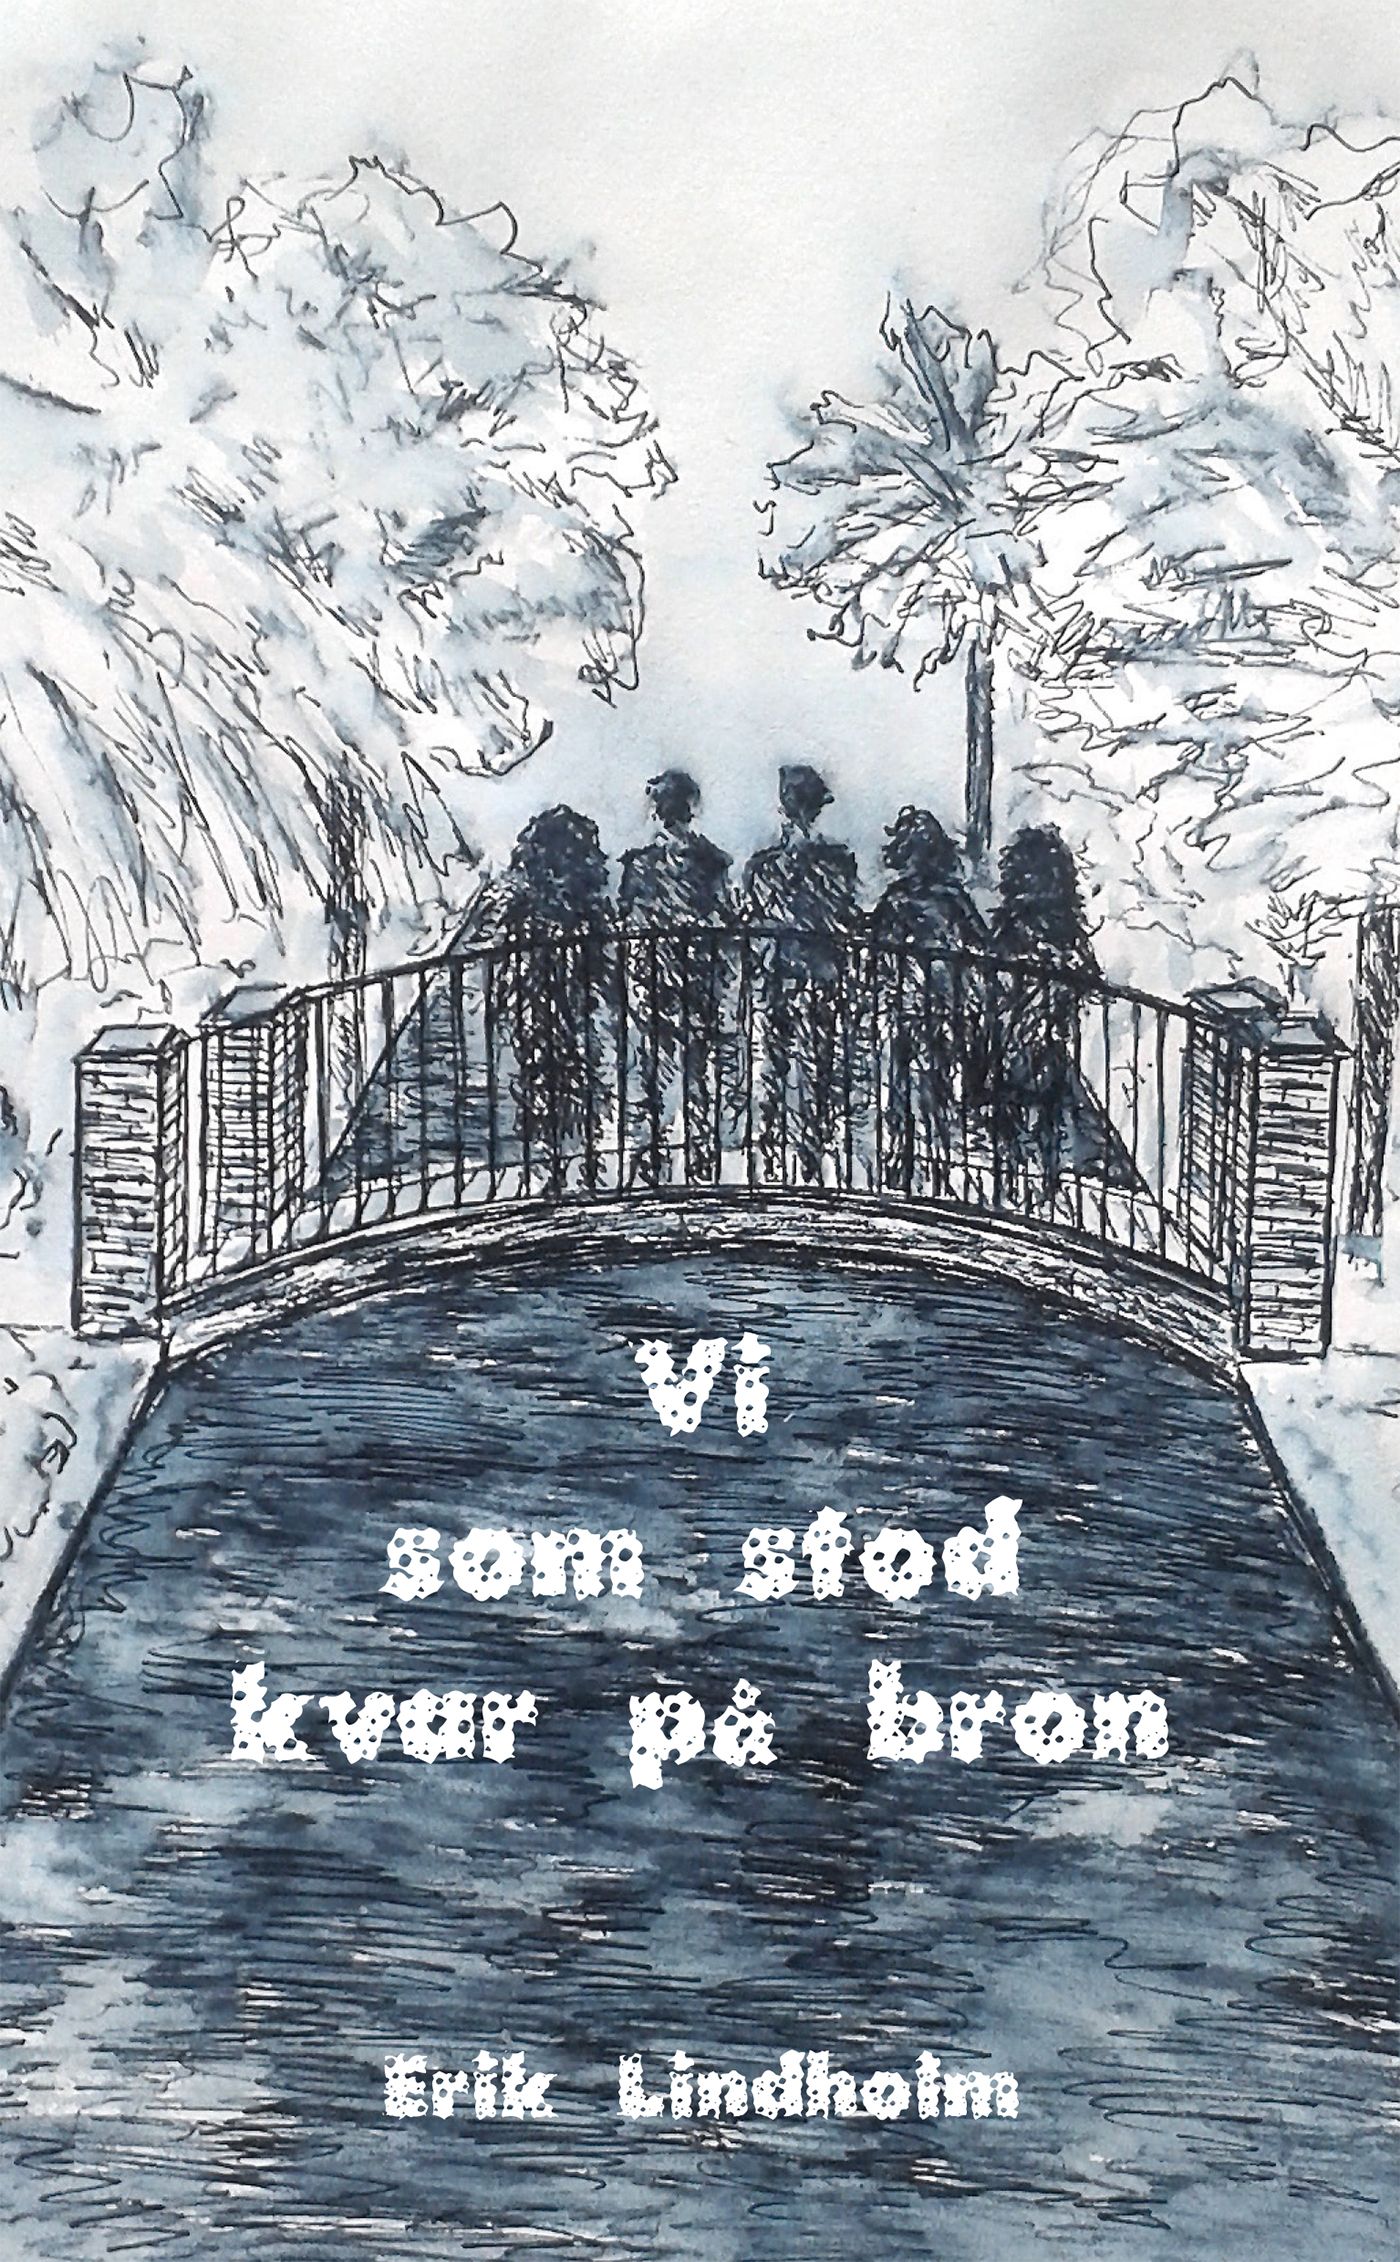 Vi som stod kvar på bron, eBook by Erik Lindholm